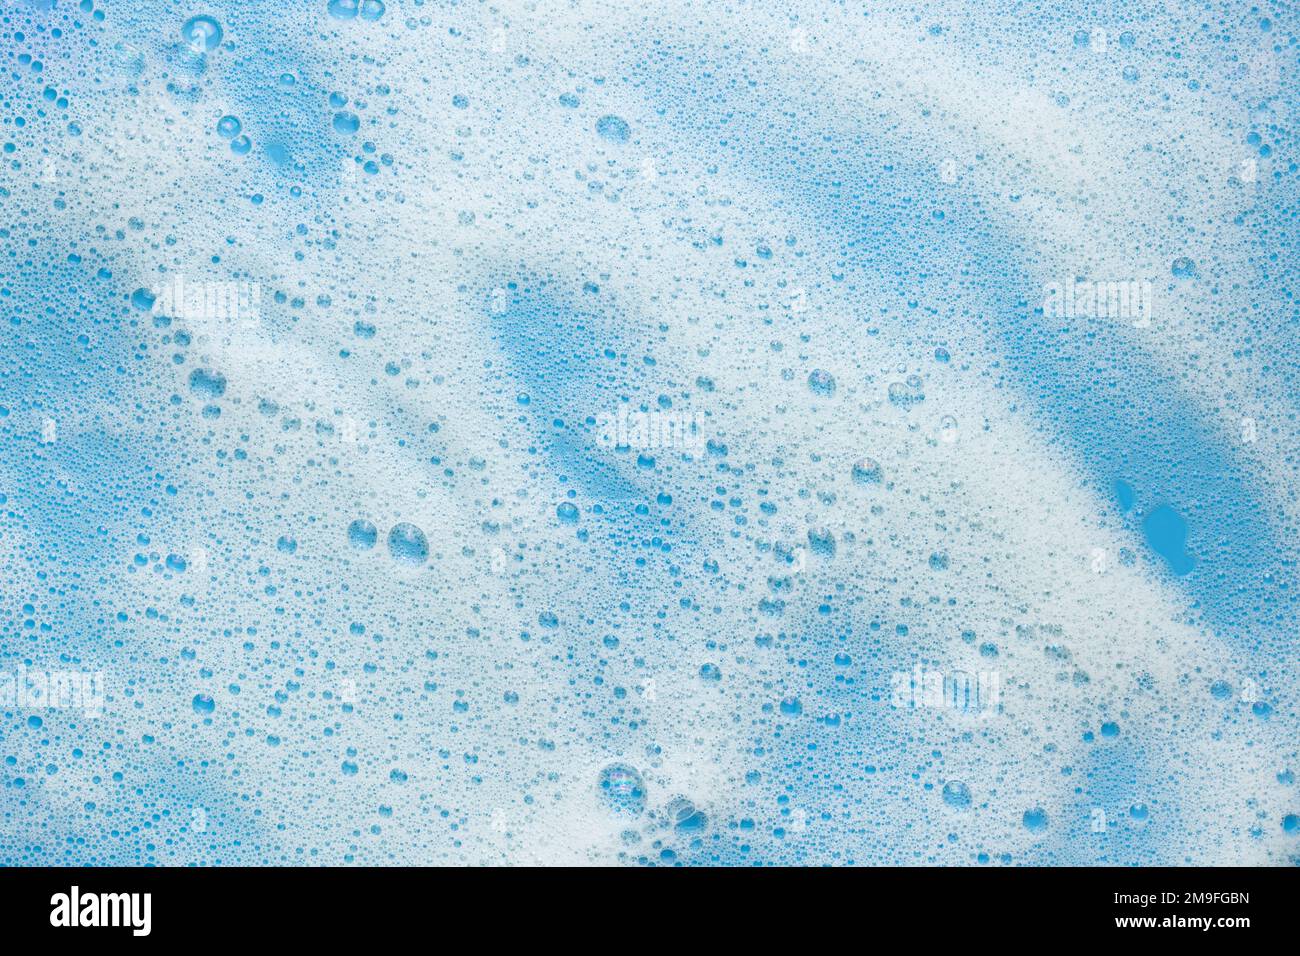 Mousse di schiuma bianca su sfondo blu. Concetto per prodotti schiumogeni, cosmetici o prodotti per la pulizia. Foto Stock